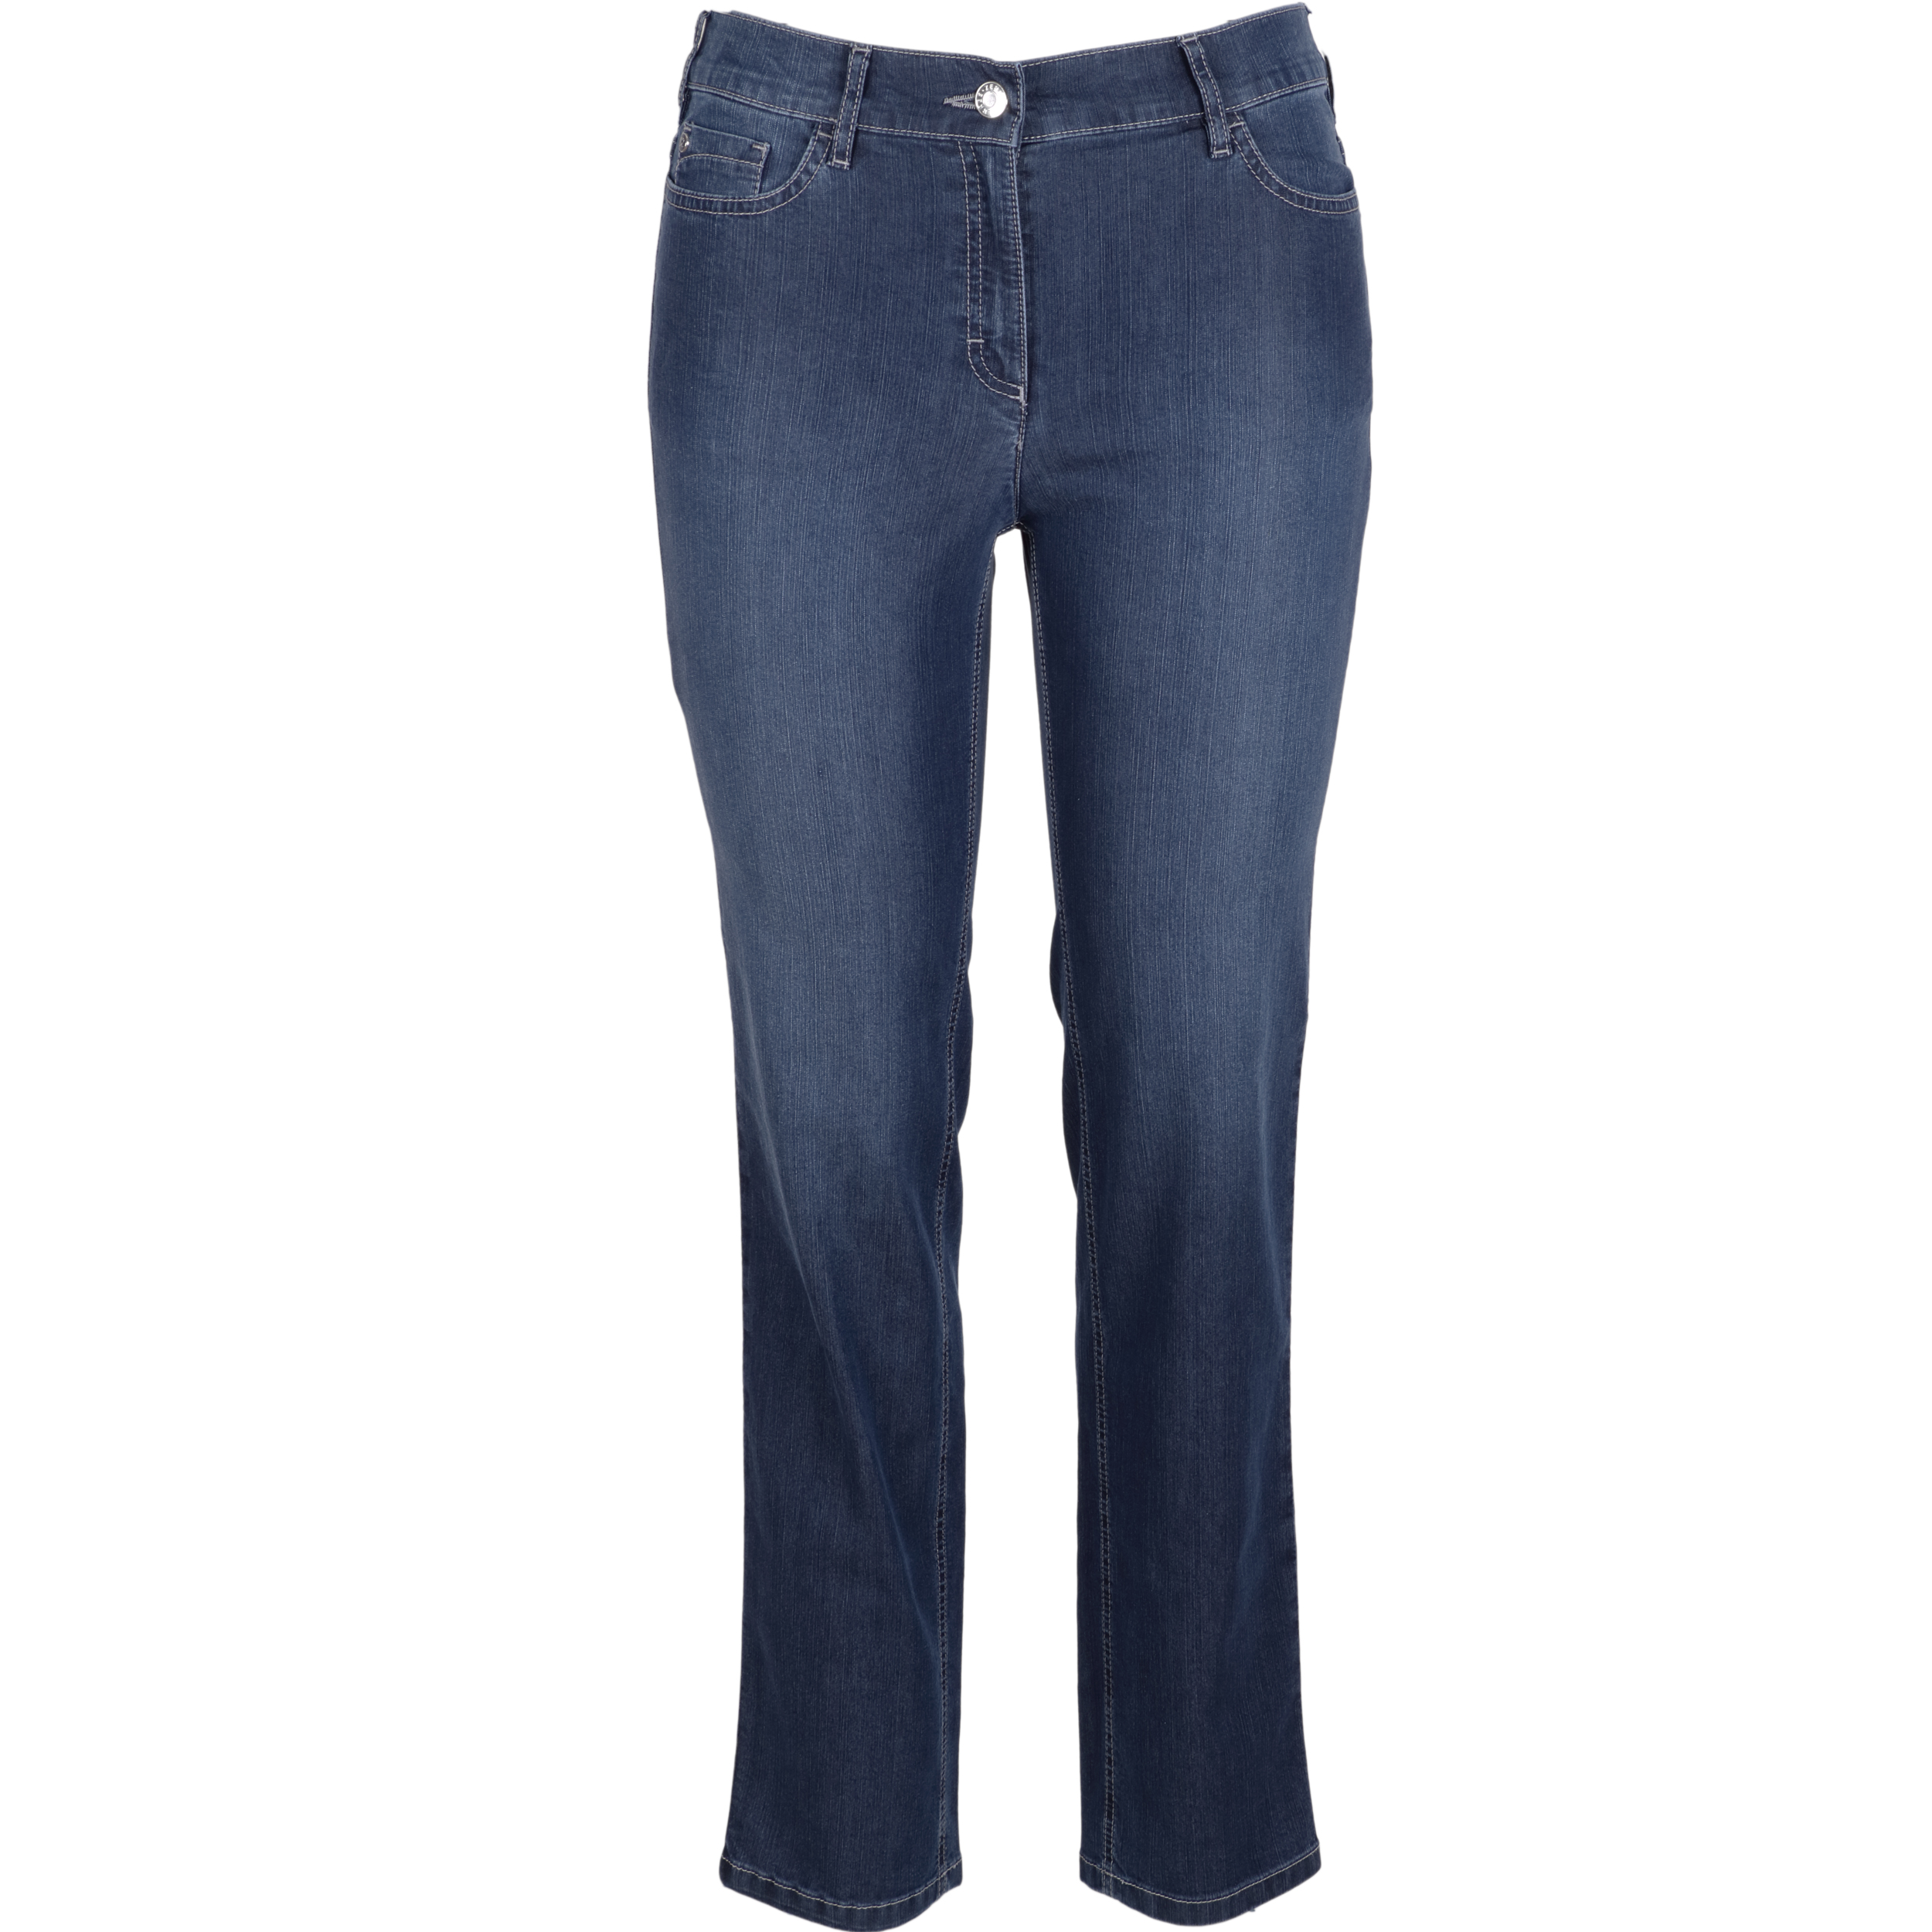 Zerres Damen Jeans Greta sommerliche Qualität 42 blau